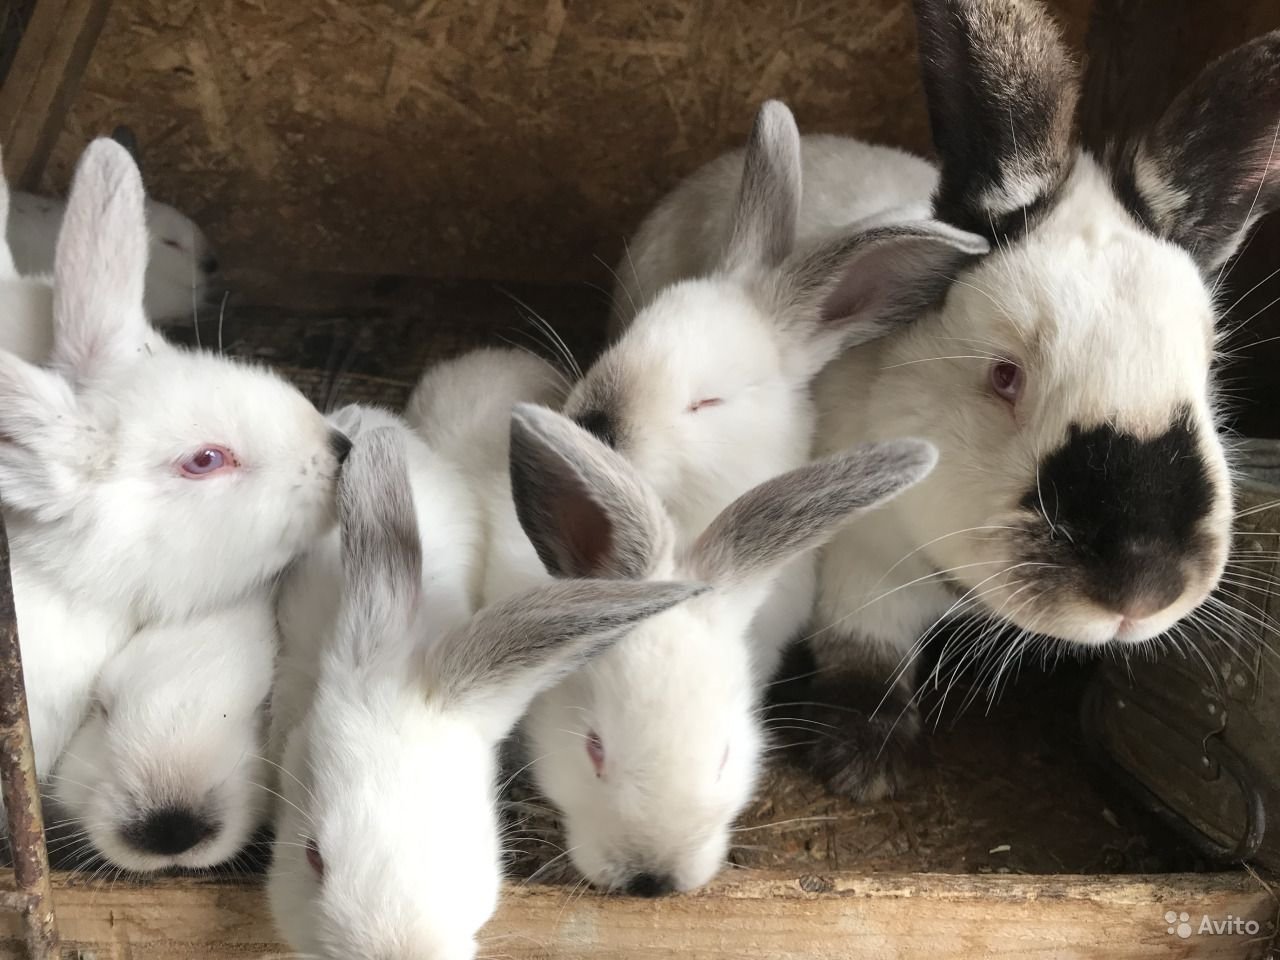 В питомнике живет несколько кроликов разного